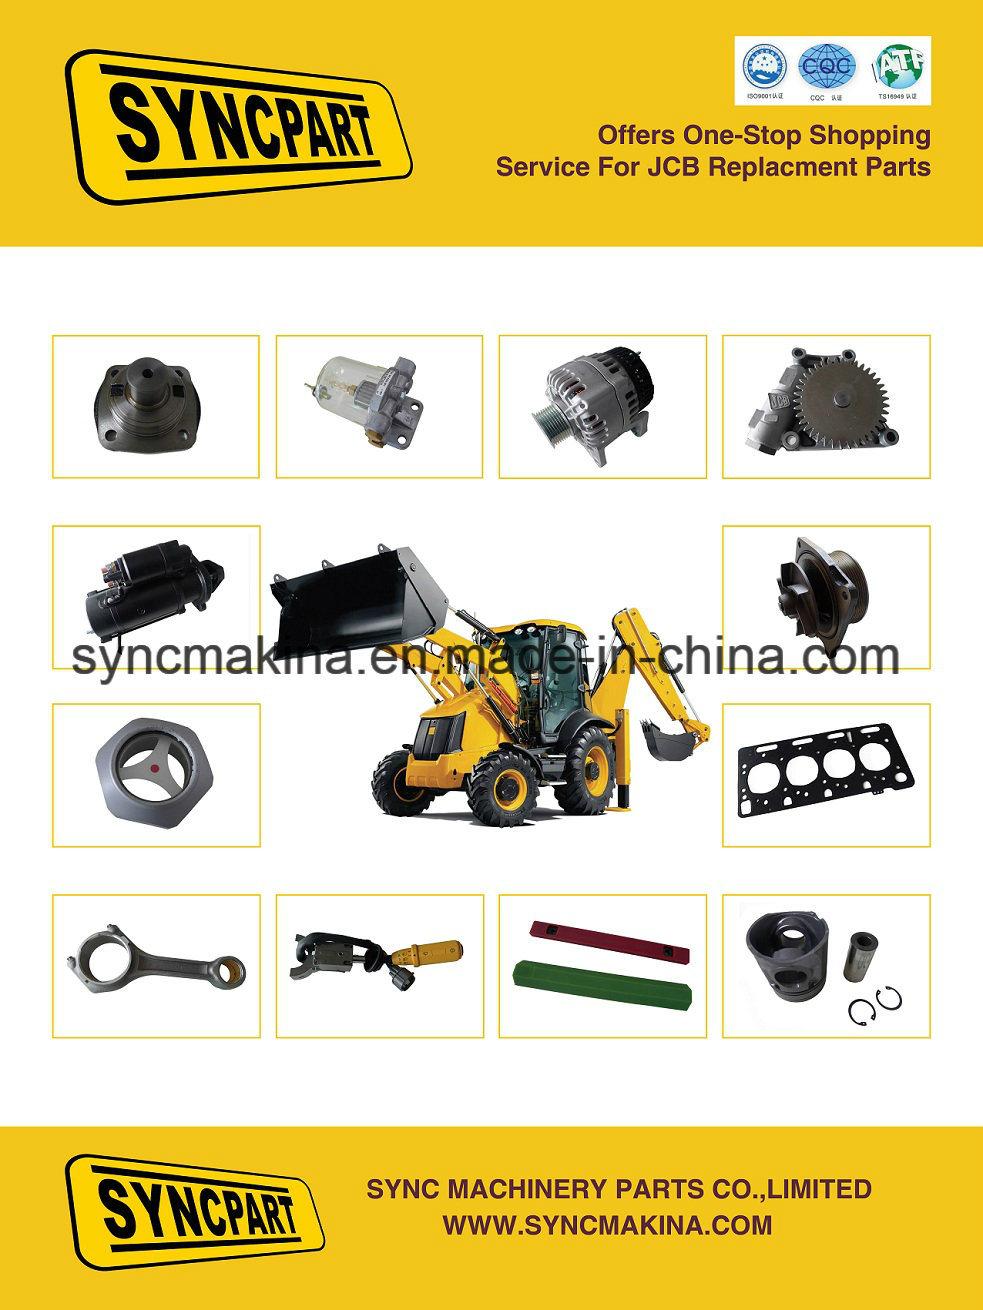 Jcb Spare Parts for Belt 02/200521 02/192088 907/05900 907/08200 907/20005 907/20034